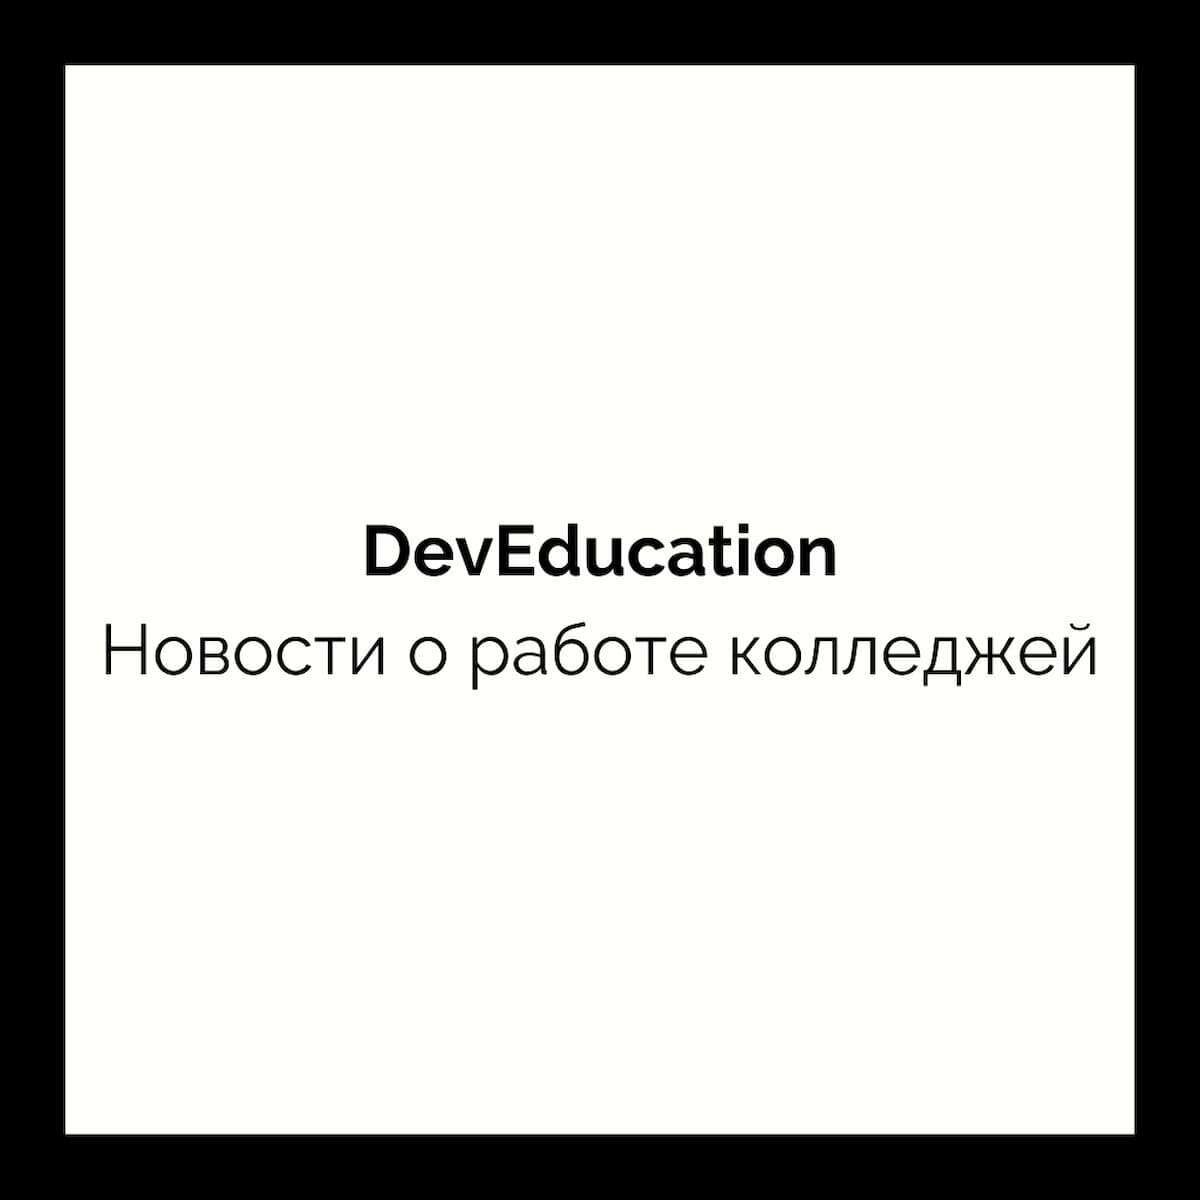 Новости о работе проекта DevEducation